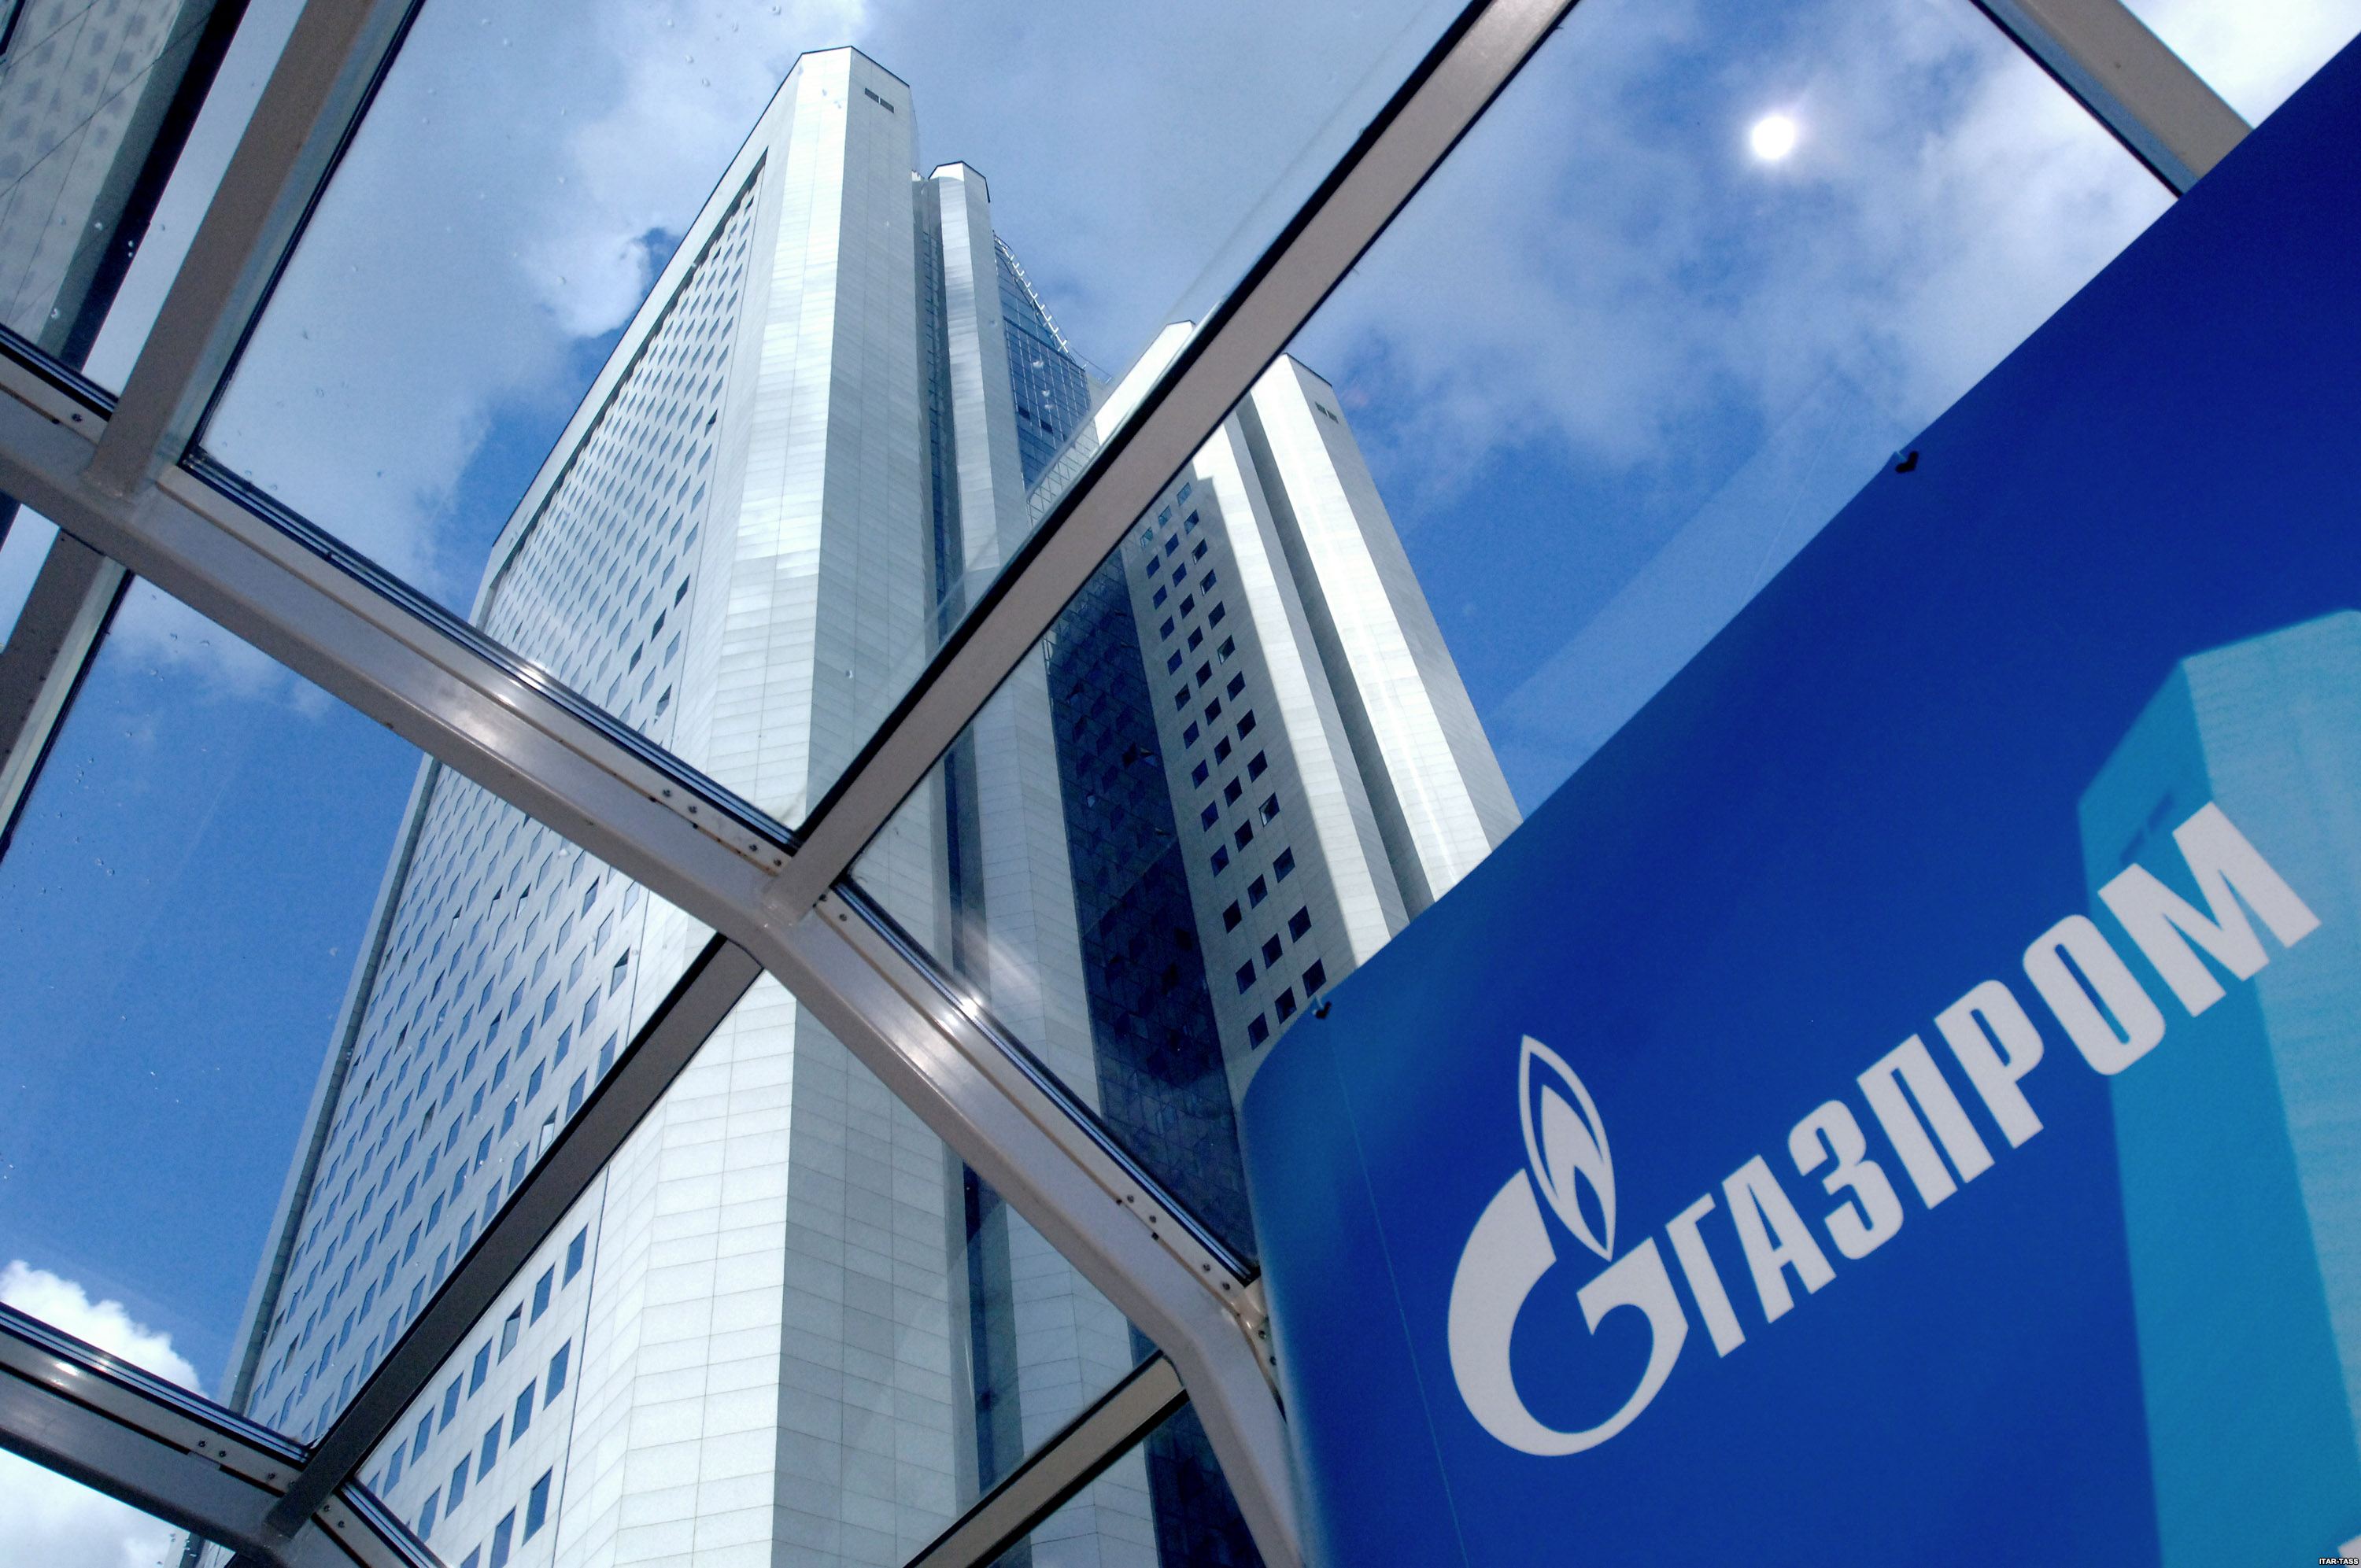 Газпром возглавил список крупнейших нефтегазовых компаний мира по версии Forbes